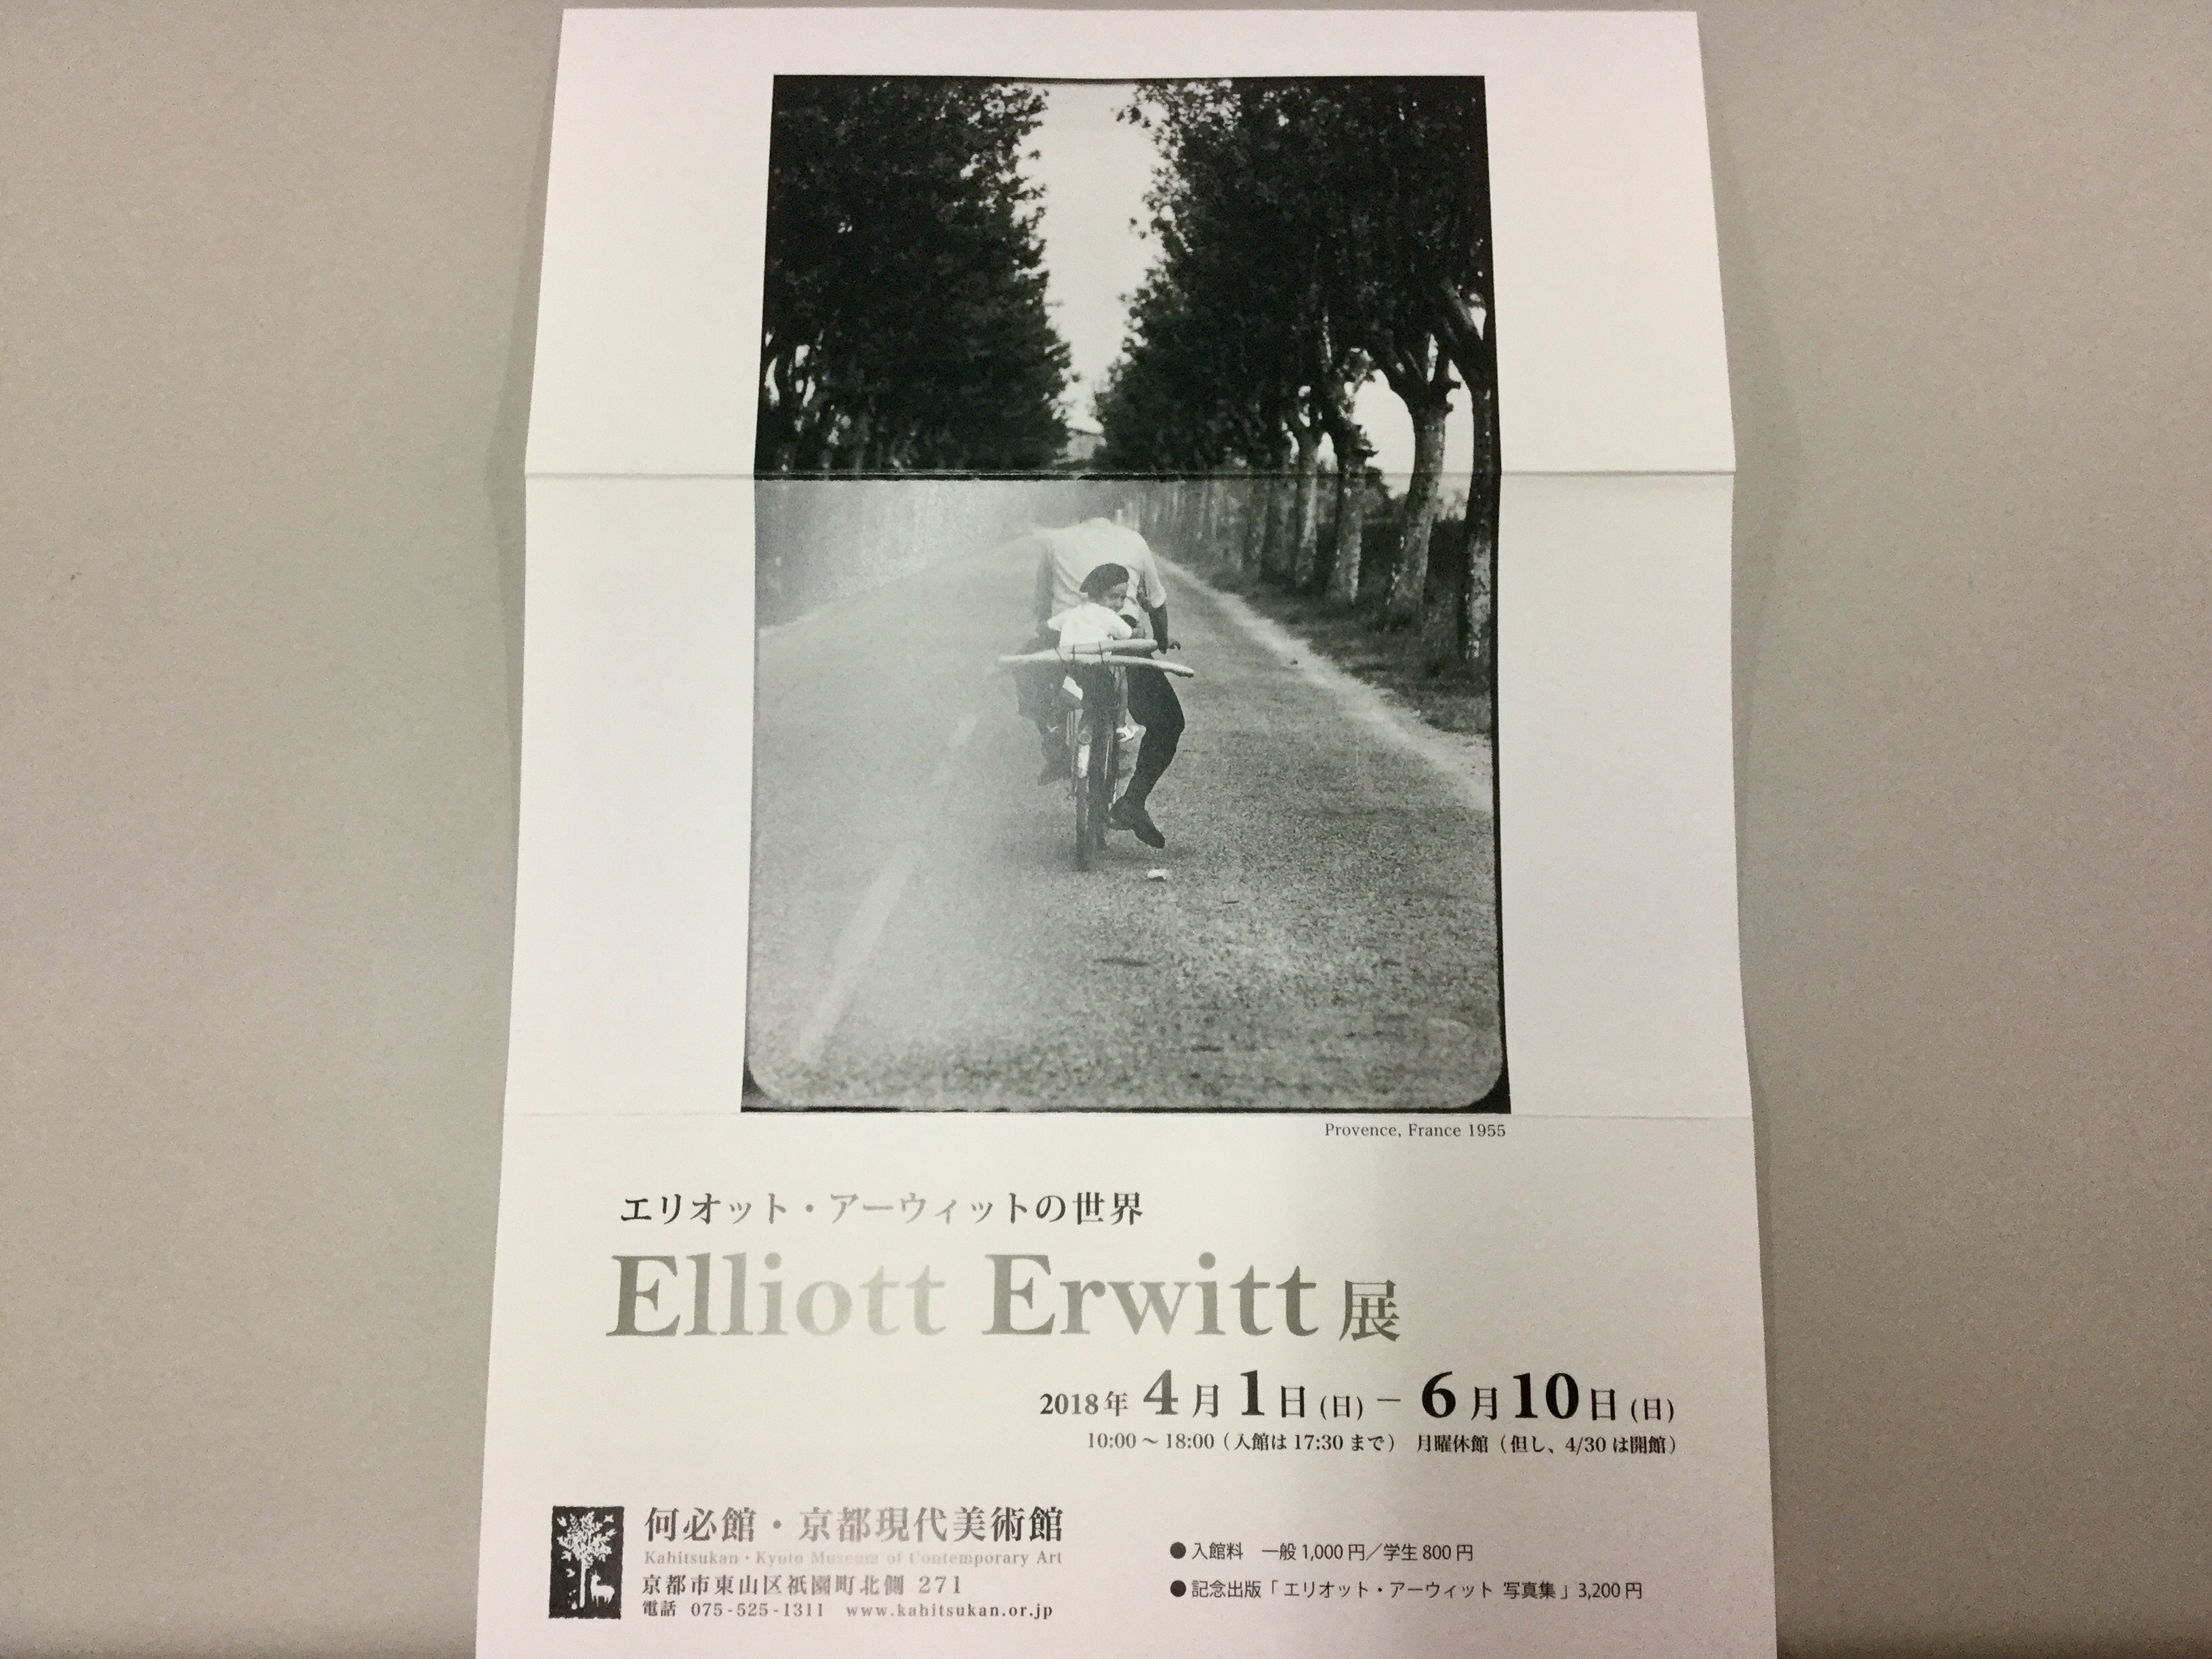 「Elliott Erwitt」展